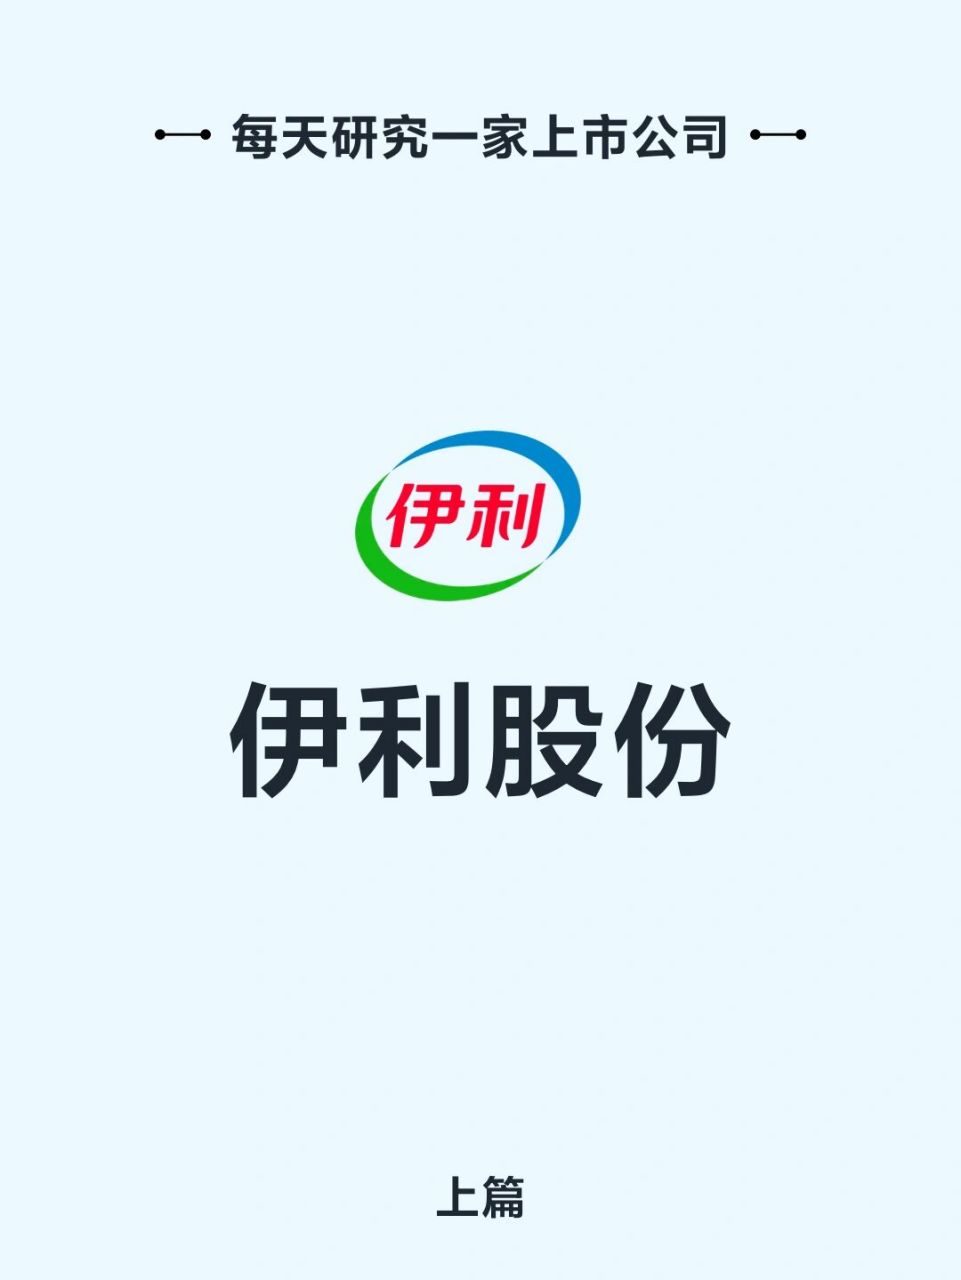 伊利冬奥logo图片